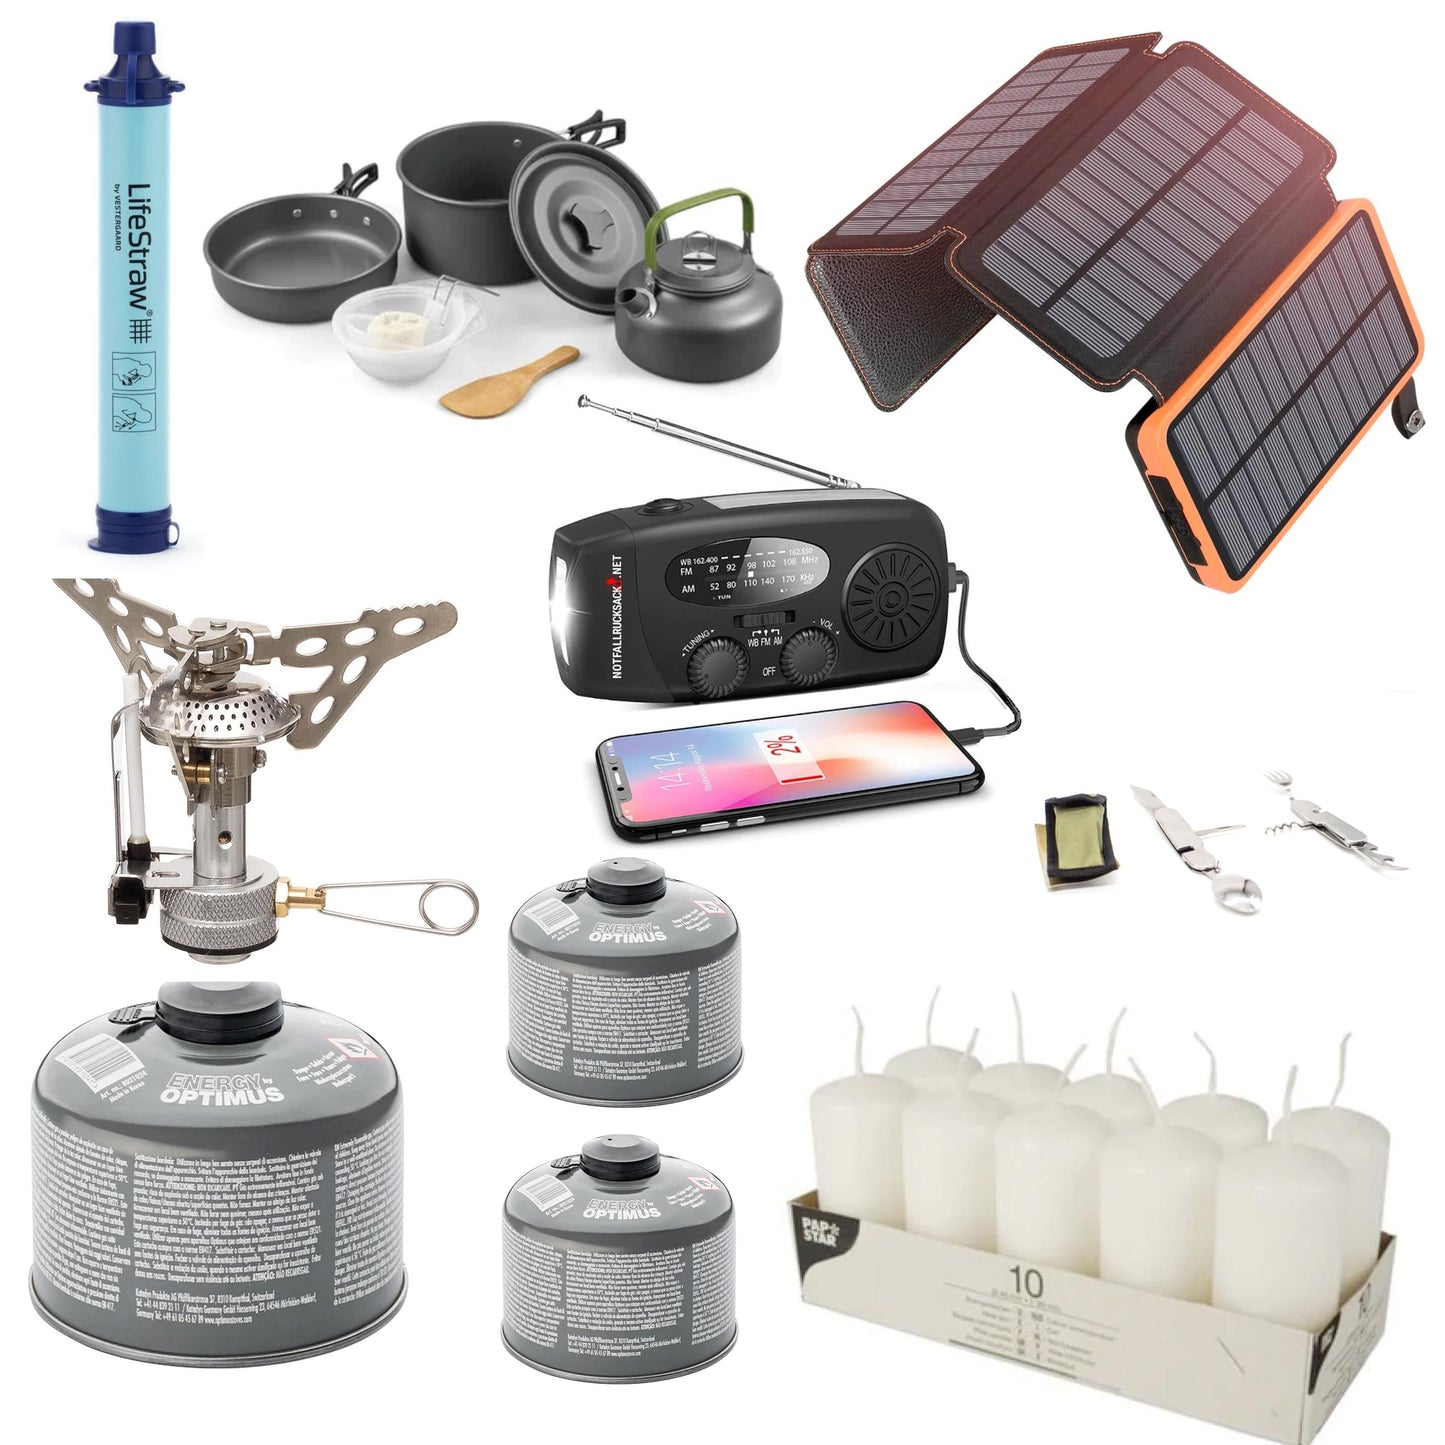 Strømbruddpakke Extreme Blackout-sett - med mega kraftstasjon, solcellepanel, gasskomfyr, kokesett, bestikk, solenergibank, vannfilter, stearinlys og mye mer